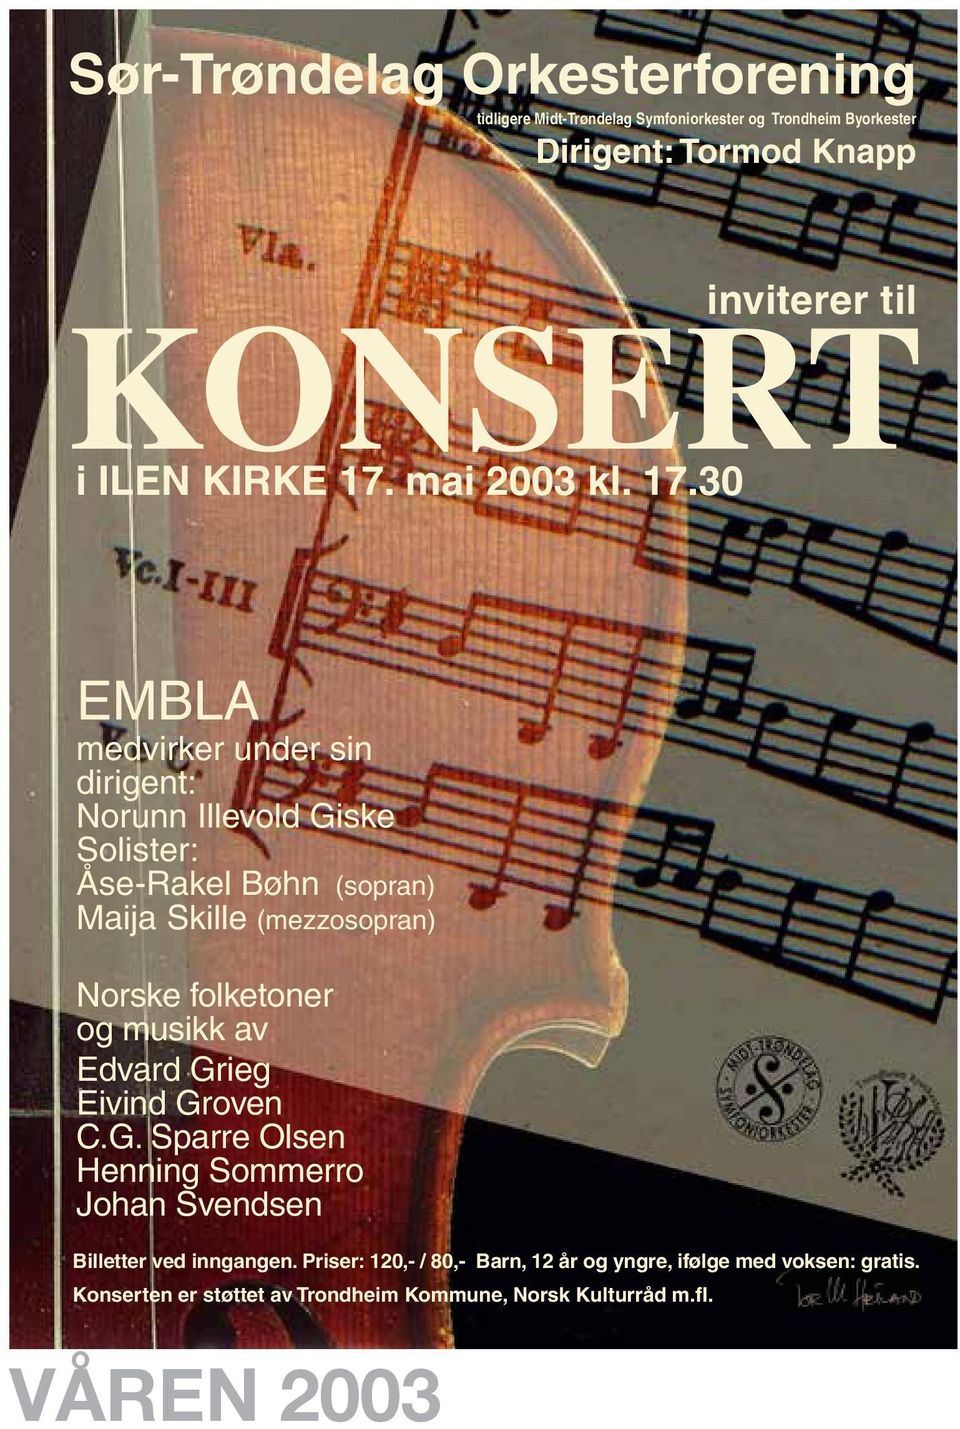 30 EMBLA medvirker under sin dirigent: Norunn Illevold Giske Solister: Åse-Rakel Bøhn (sopran) Maija Skille (mezzosopran) Norske